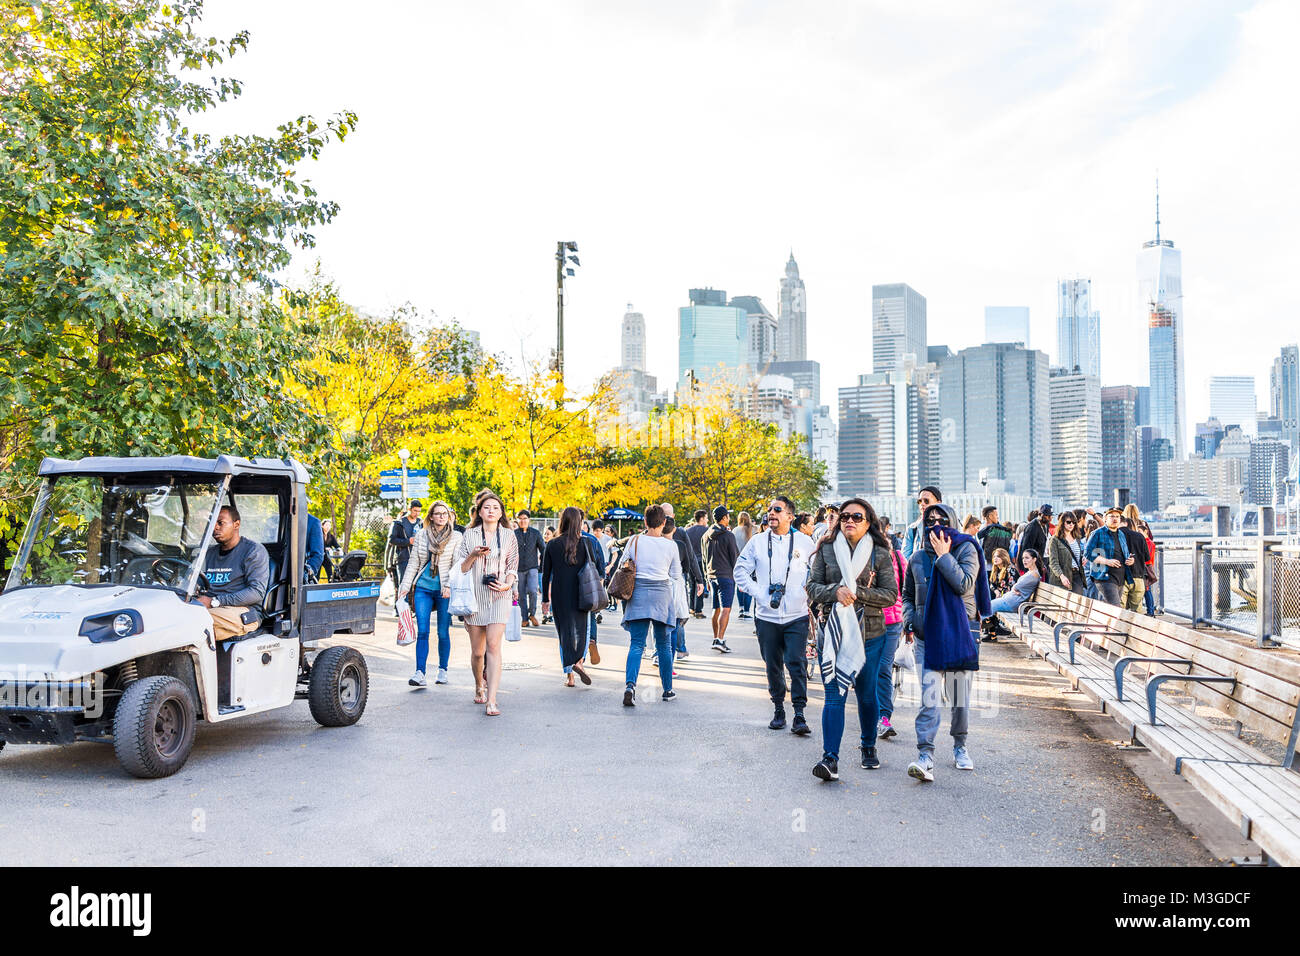 Brooklyn, Etats-Unis - 28 octobre 2017 : l'extérieur de l'extérieur dans NYC New York City Pont de Brooklyn Park avec de nombreuses personnes sur boardwalk sur East River, cit Banque D'Images